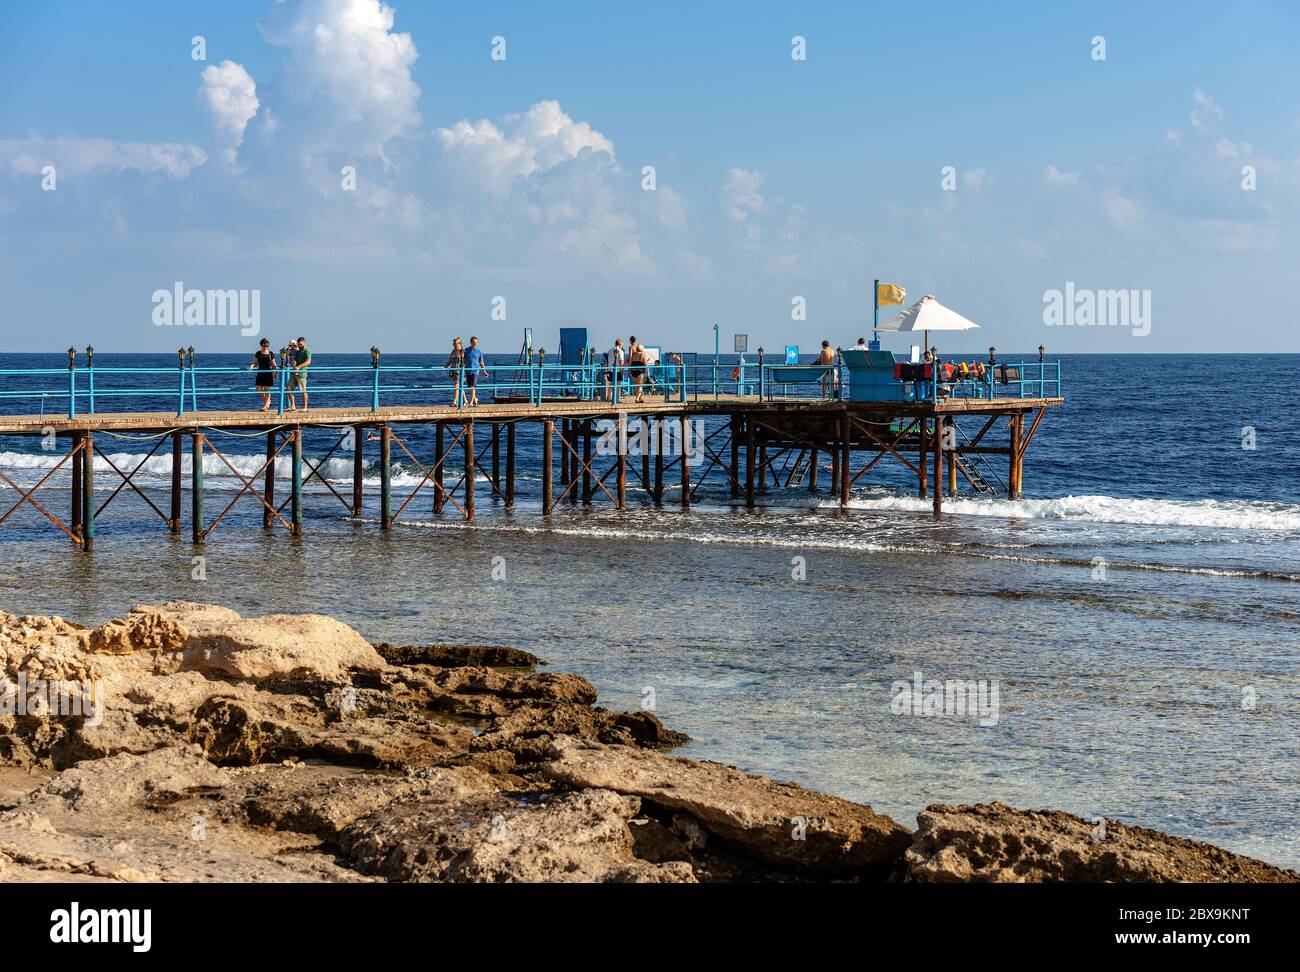 Rotes Meer bei Marsa Alam, Ägypten, Afrika. Hölzerner Pier über dem Korallenriff, der zum Tauchen oder Schnorcheln und zum Meeresumhang genutzt wird. Stockfoto